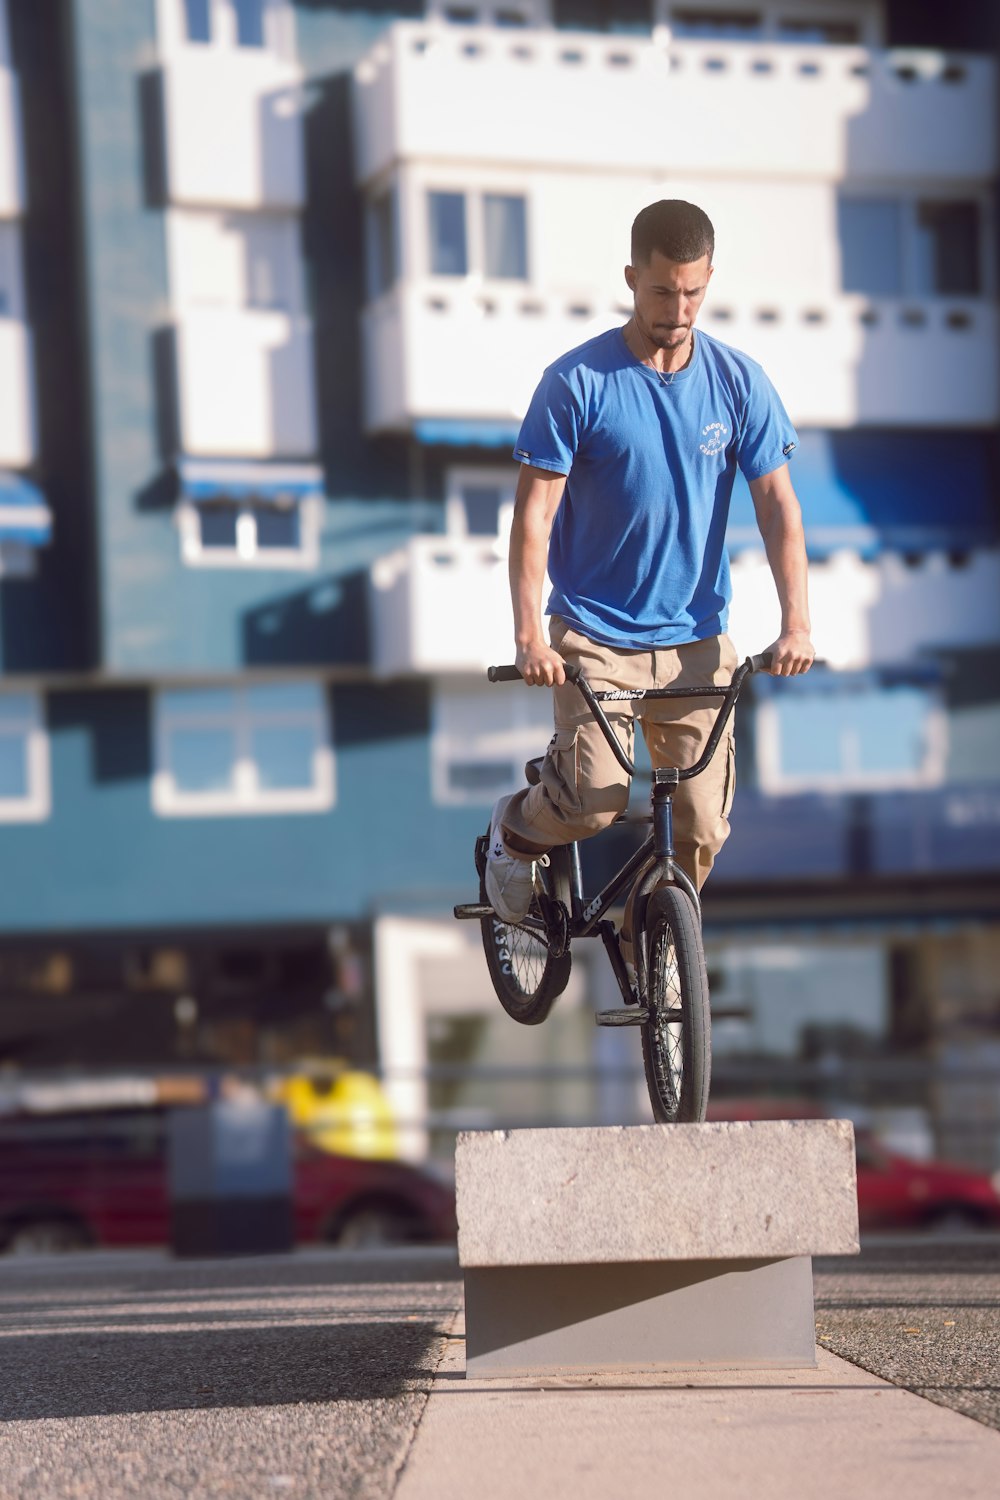 시멘트 블록 위에서 자전거를 타고 있는 남자